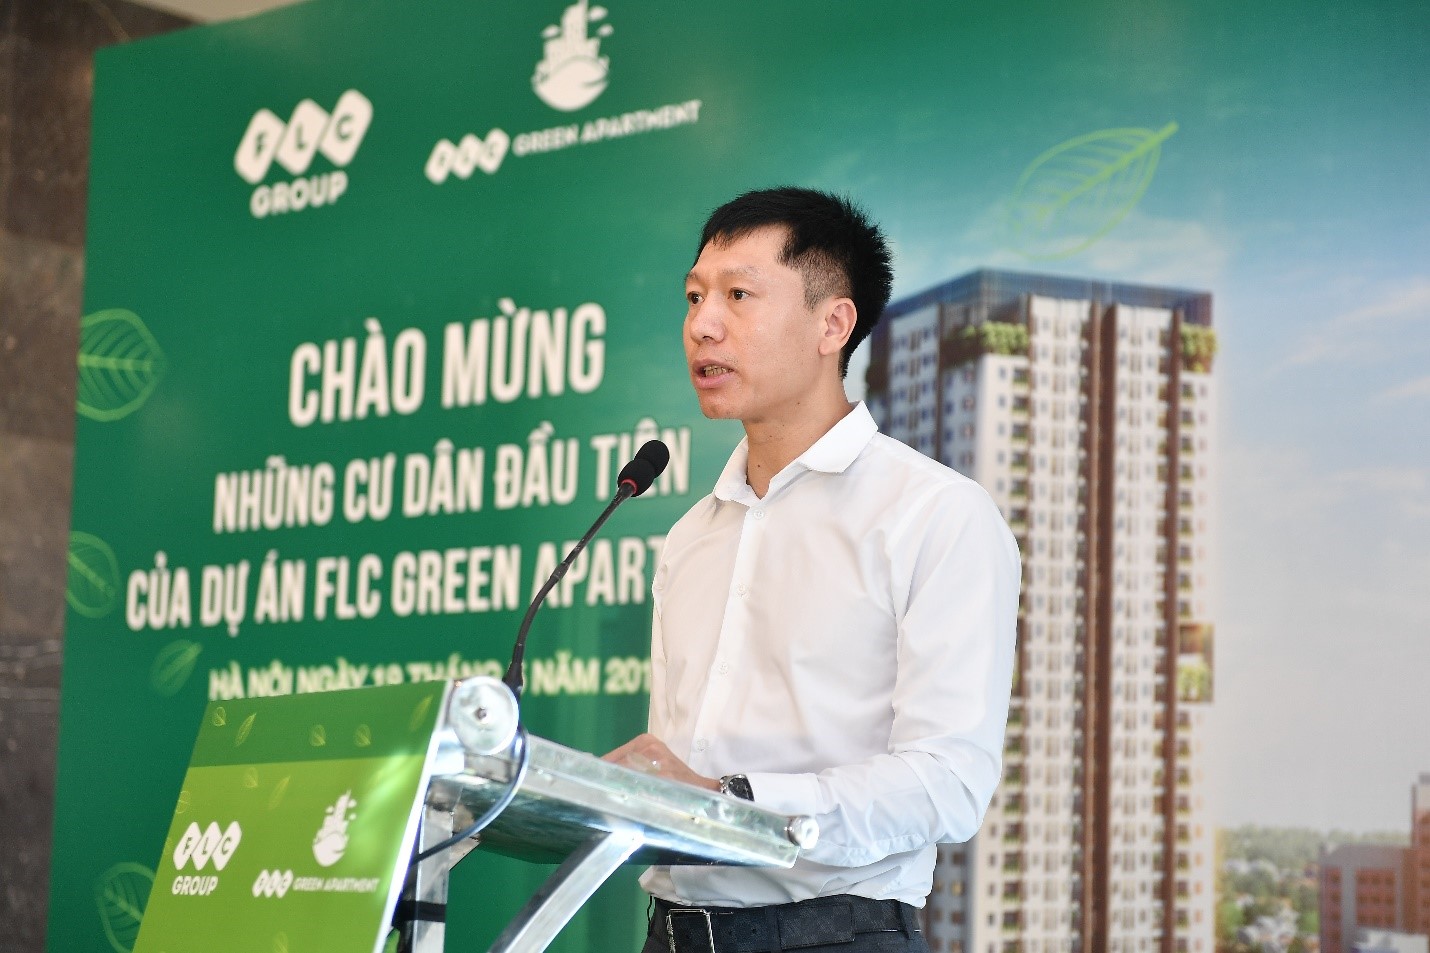 Ảnh 1: Đại diện chủ đầu tư - ông Nguyễn Thiện Phú phát biểu tại sự kiện